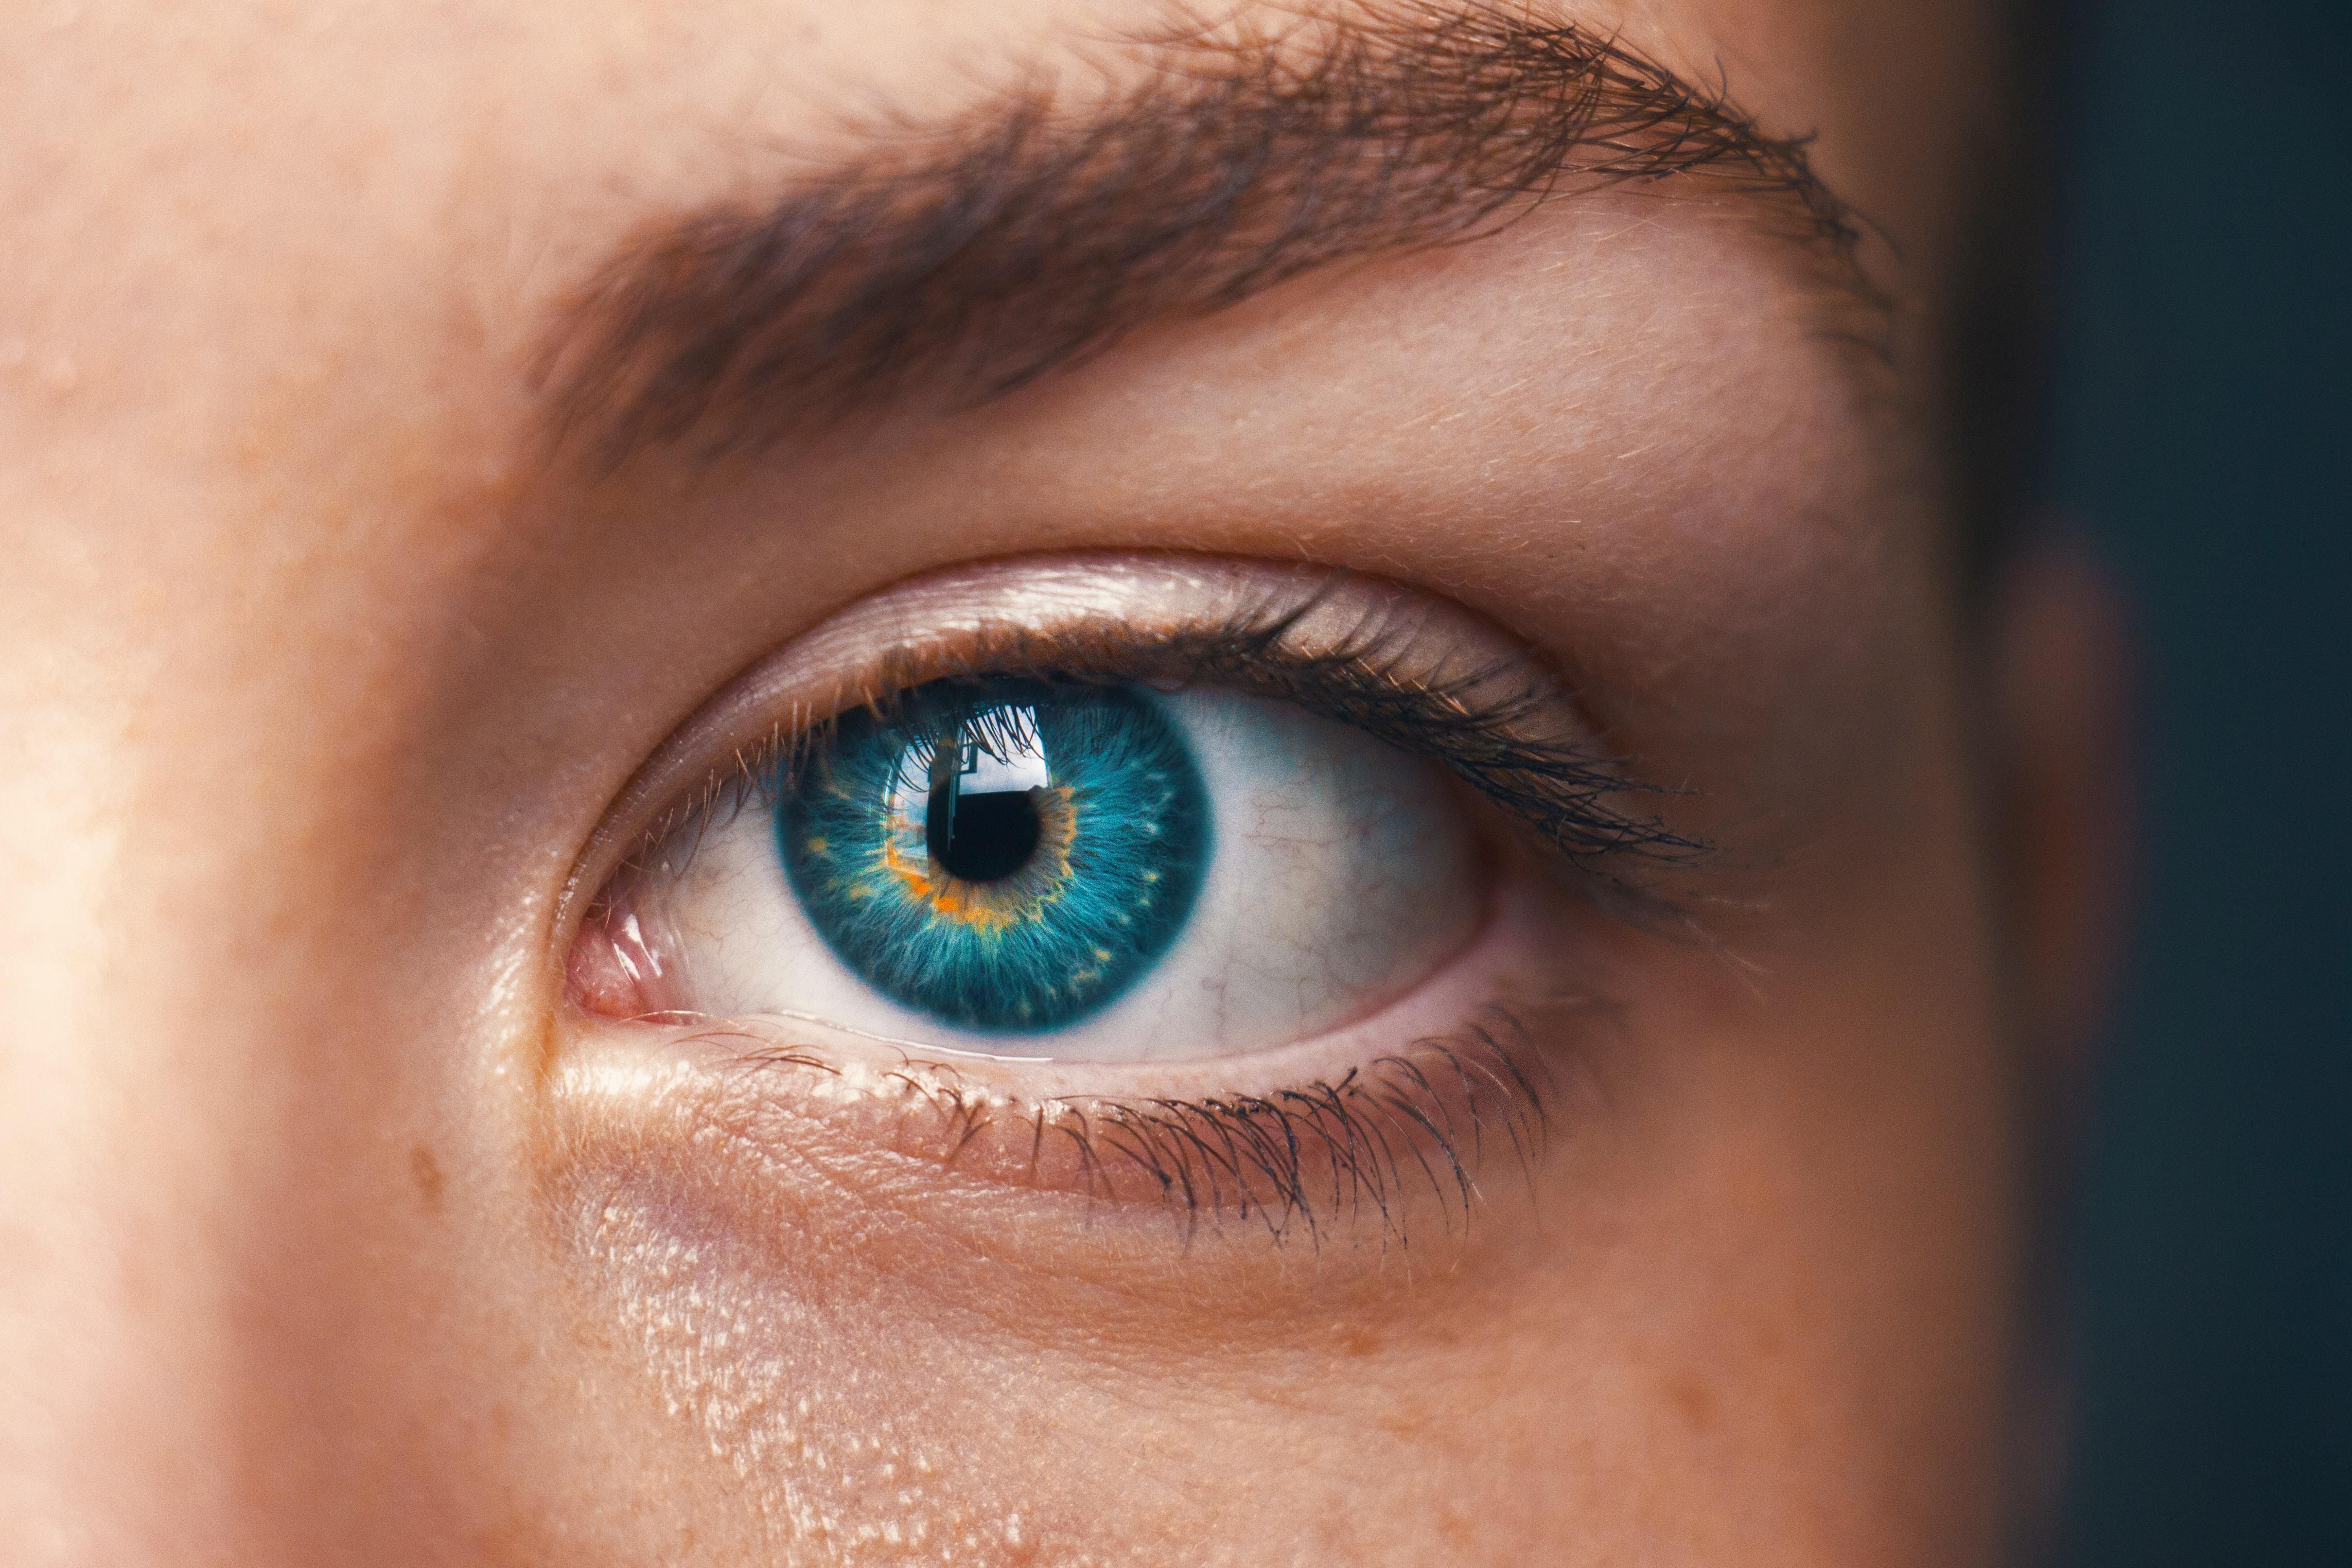 Инъекции в глаза могут вылечить тяжелое заболевание